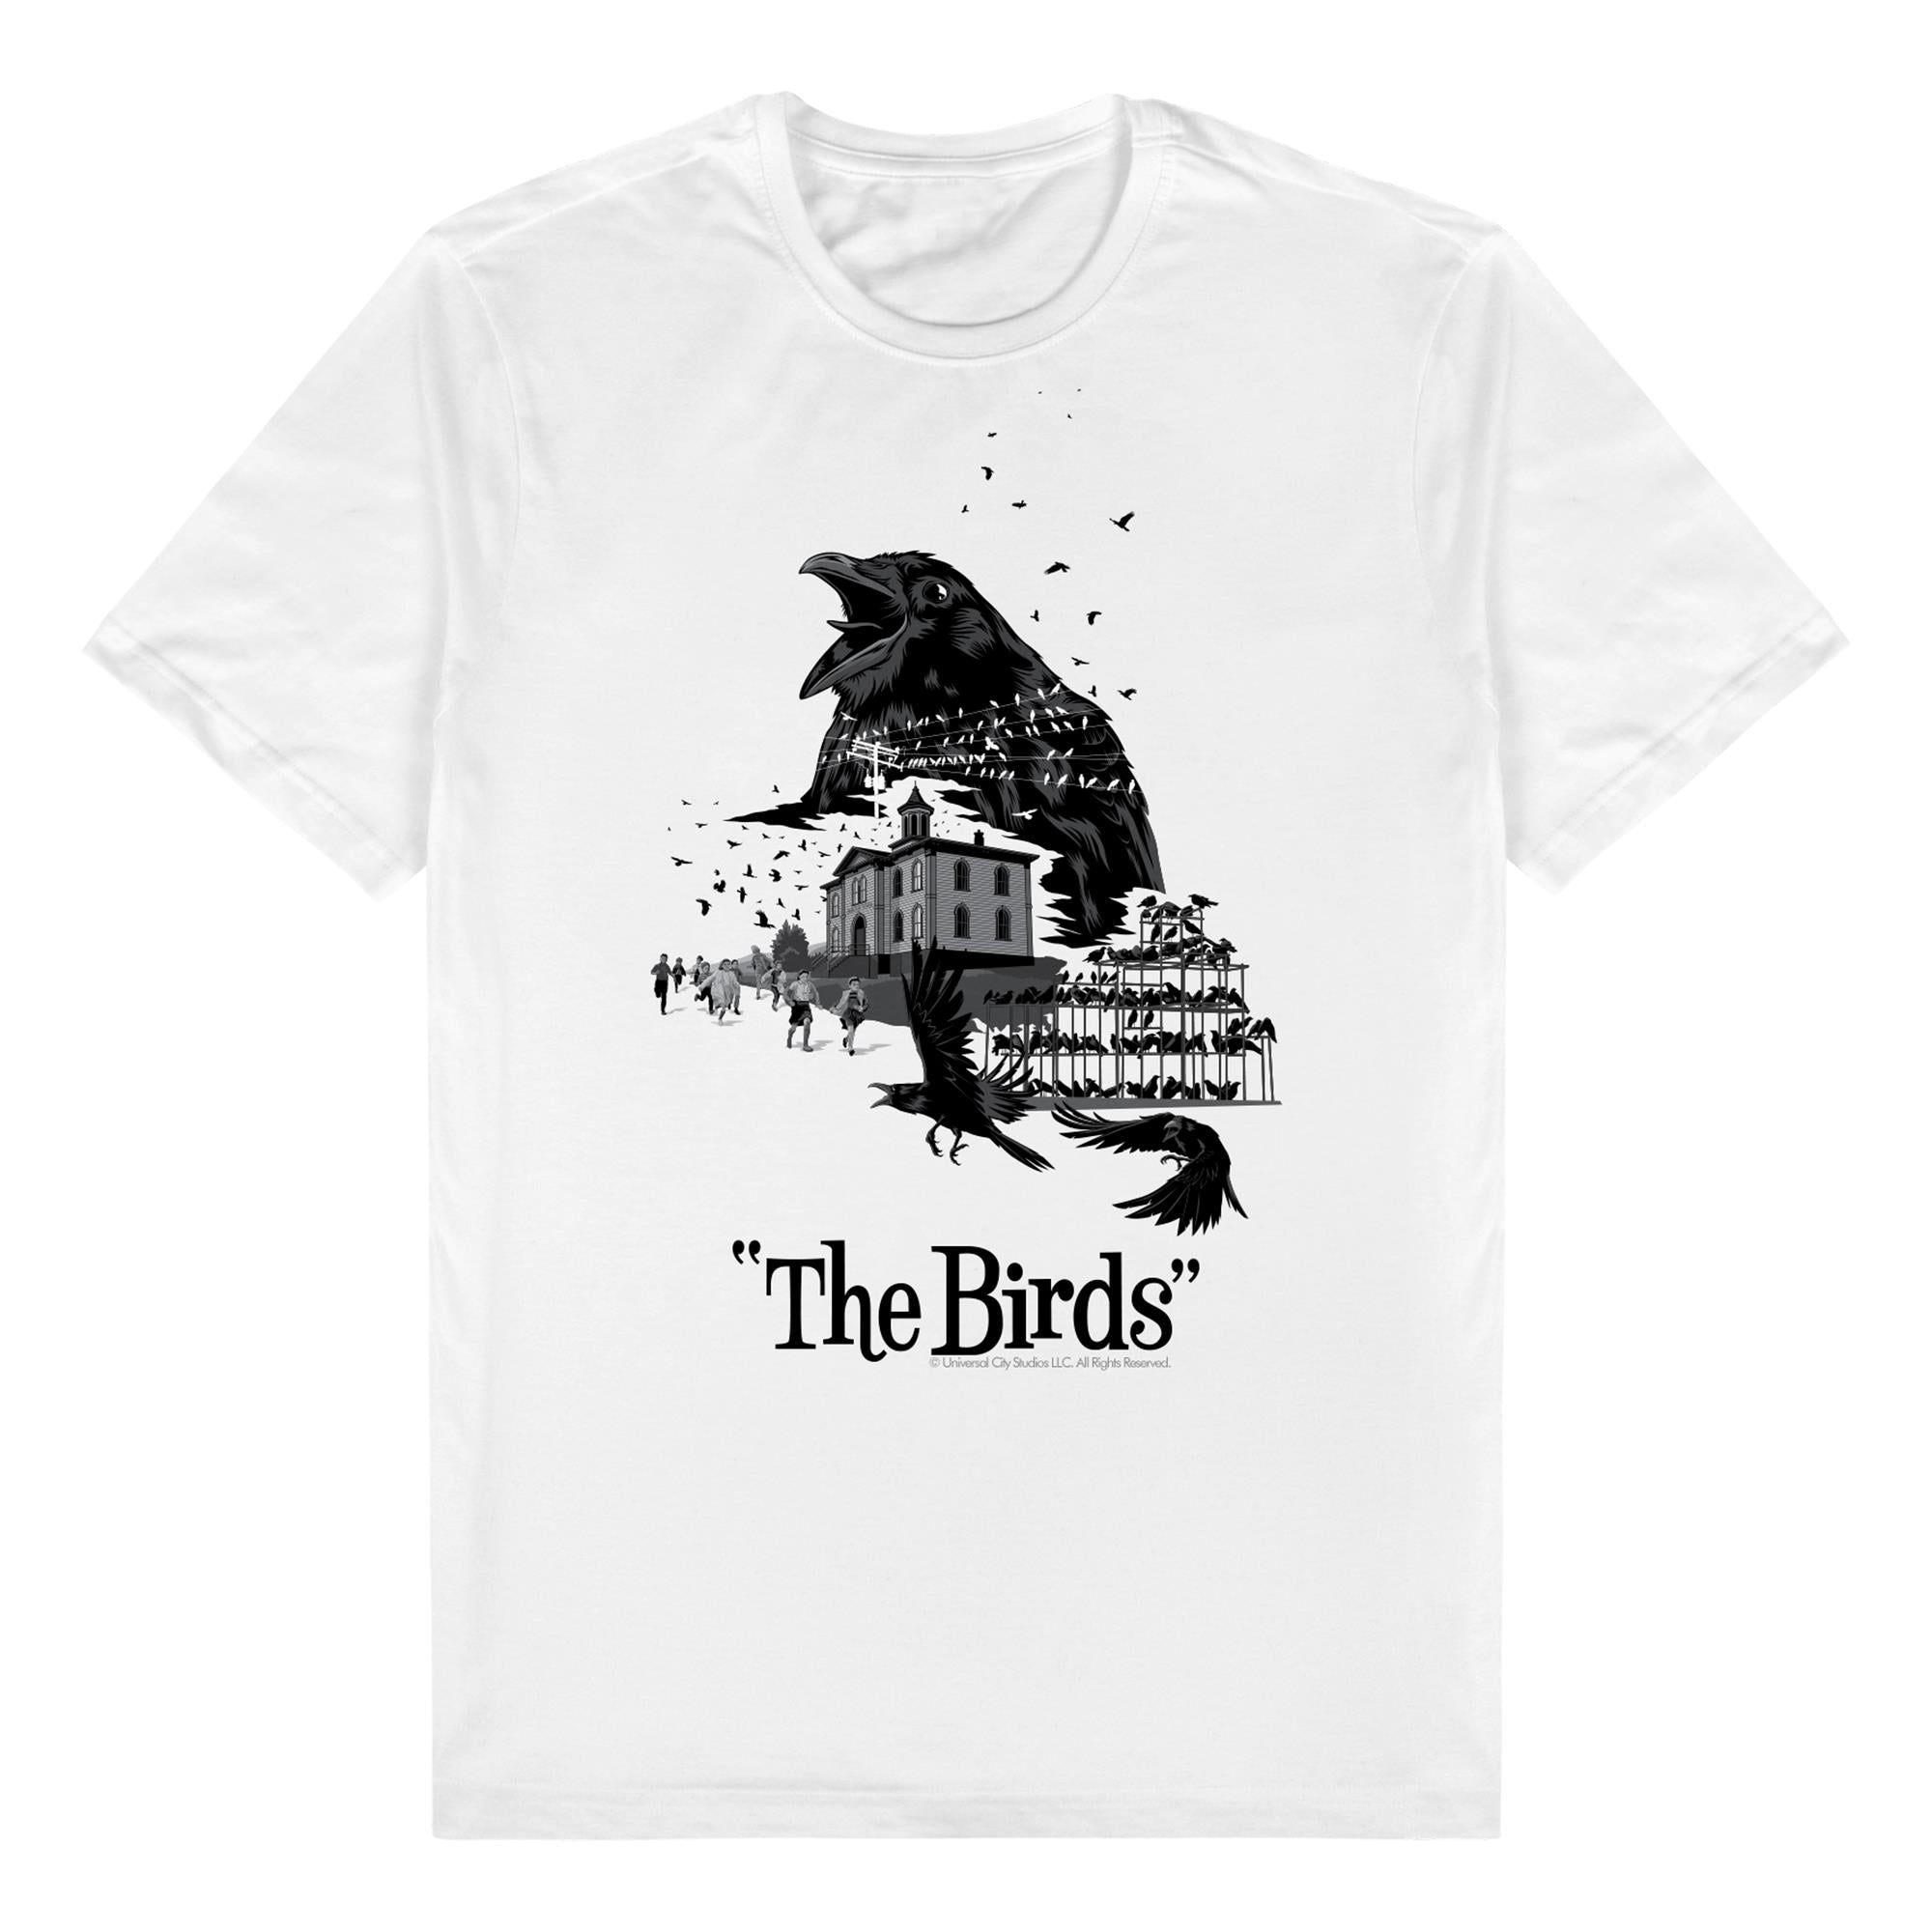 birds, the t-shirt